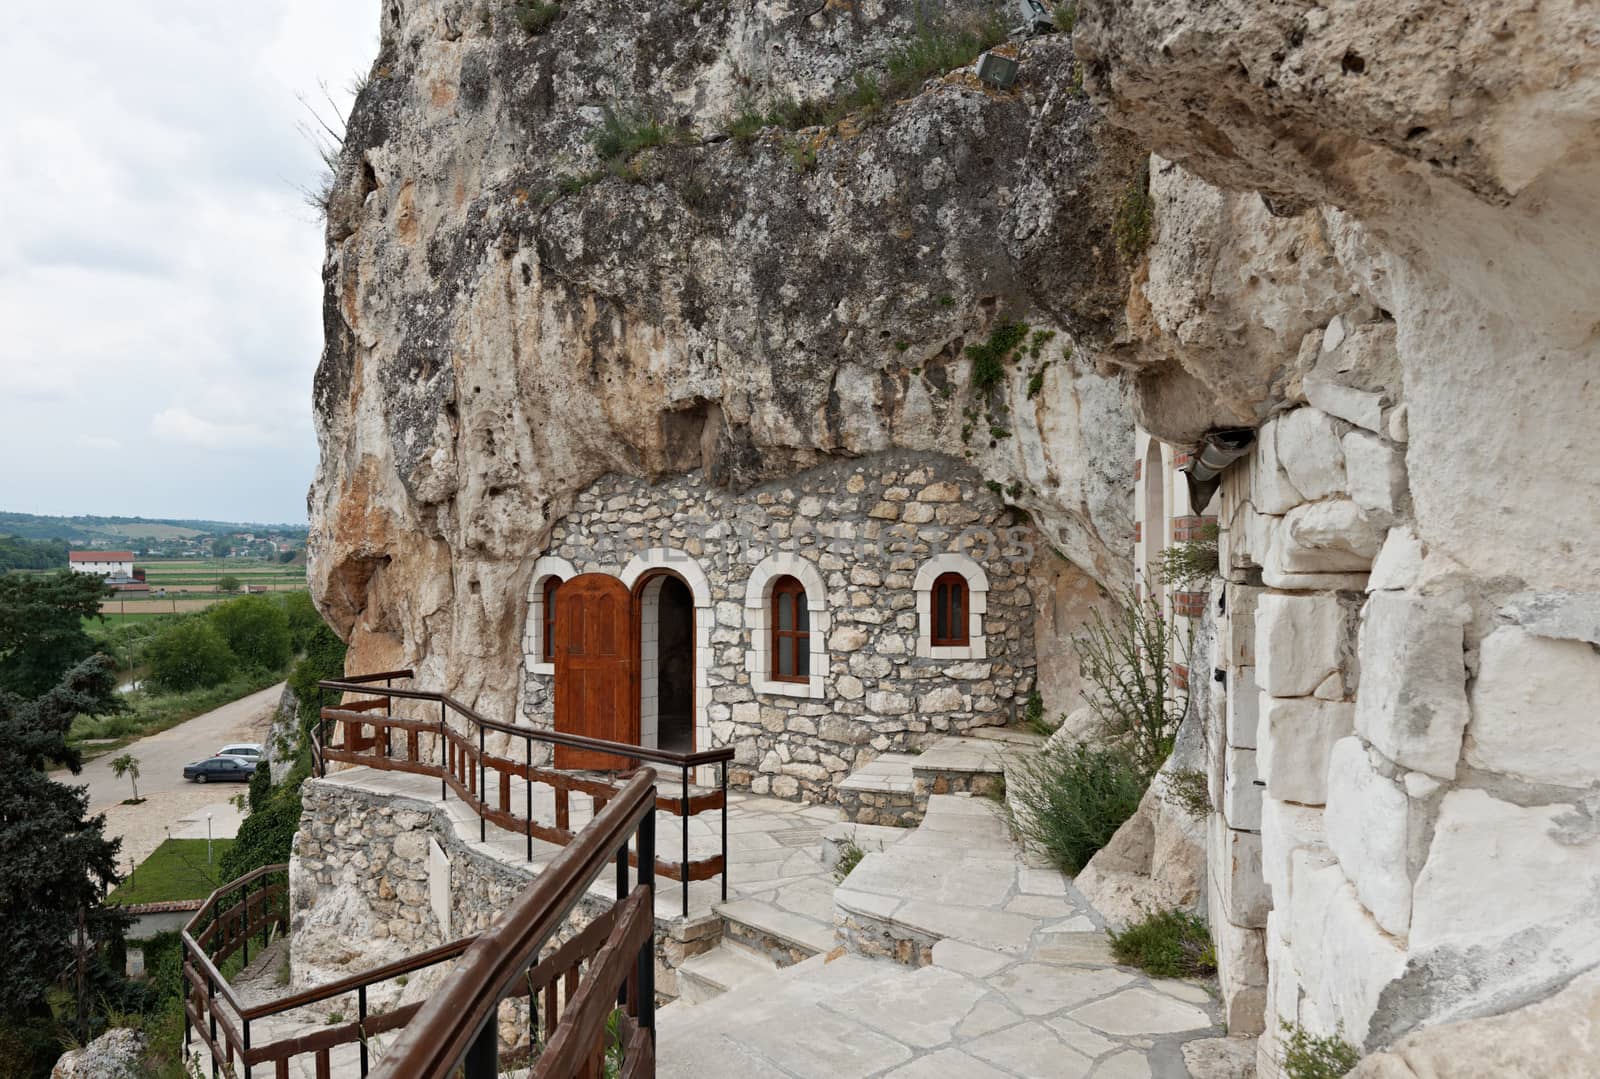 Rocks of Basarbovo monastery, Bulgaria